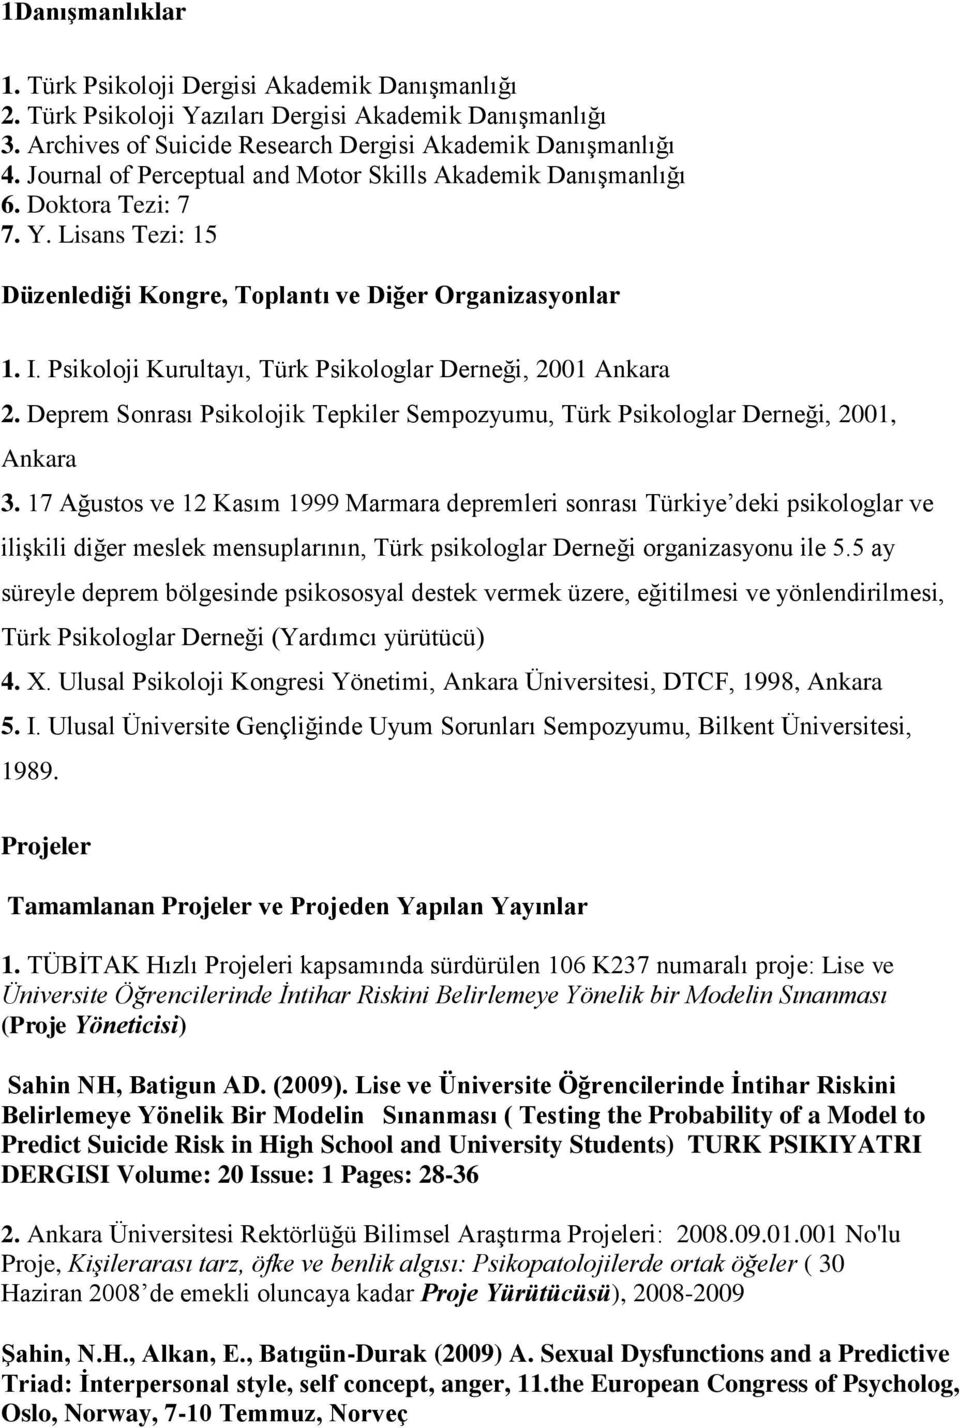 Psikoloji Kurultayı, Türk Psikologlar Derneği, 2001 Ankara 2. Deprem Sonrası Psikolojik Tepkiler Sempozyumu, Türk Psikologlar Derneği, 2001, Ankara 3.